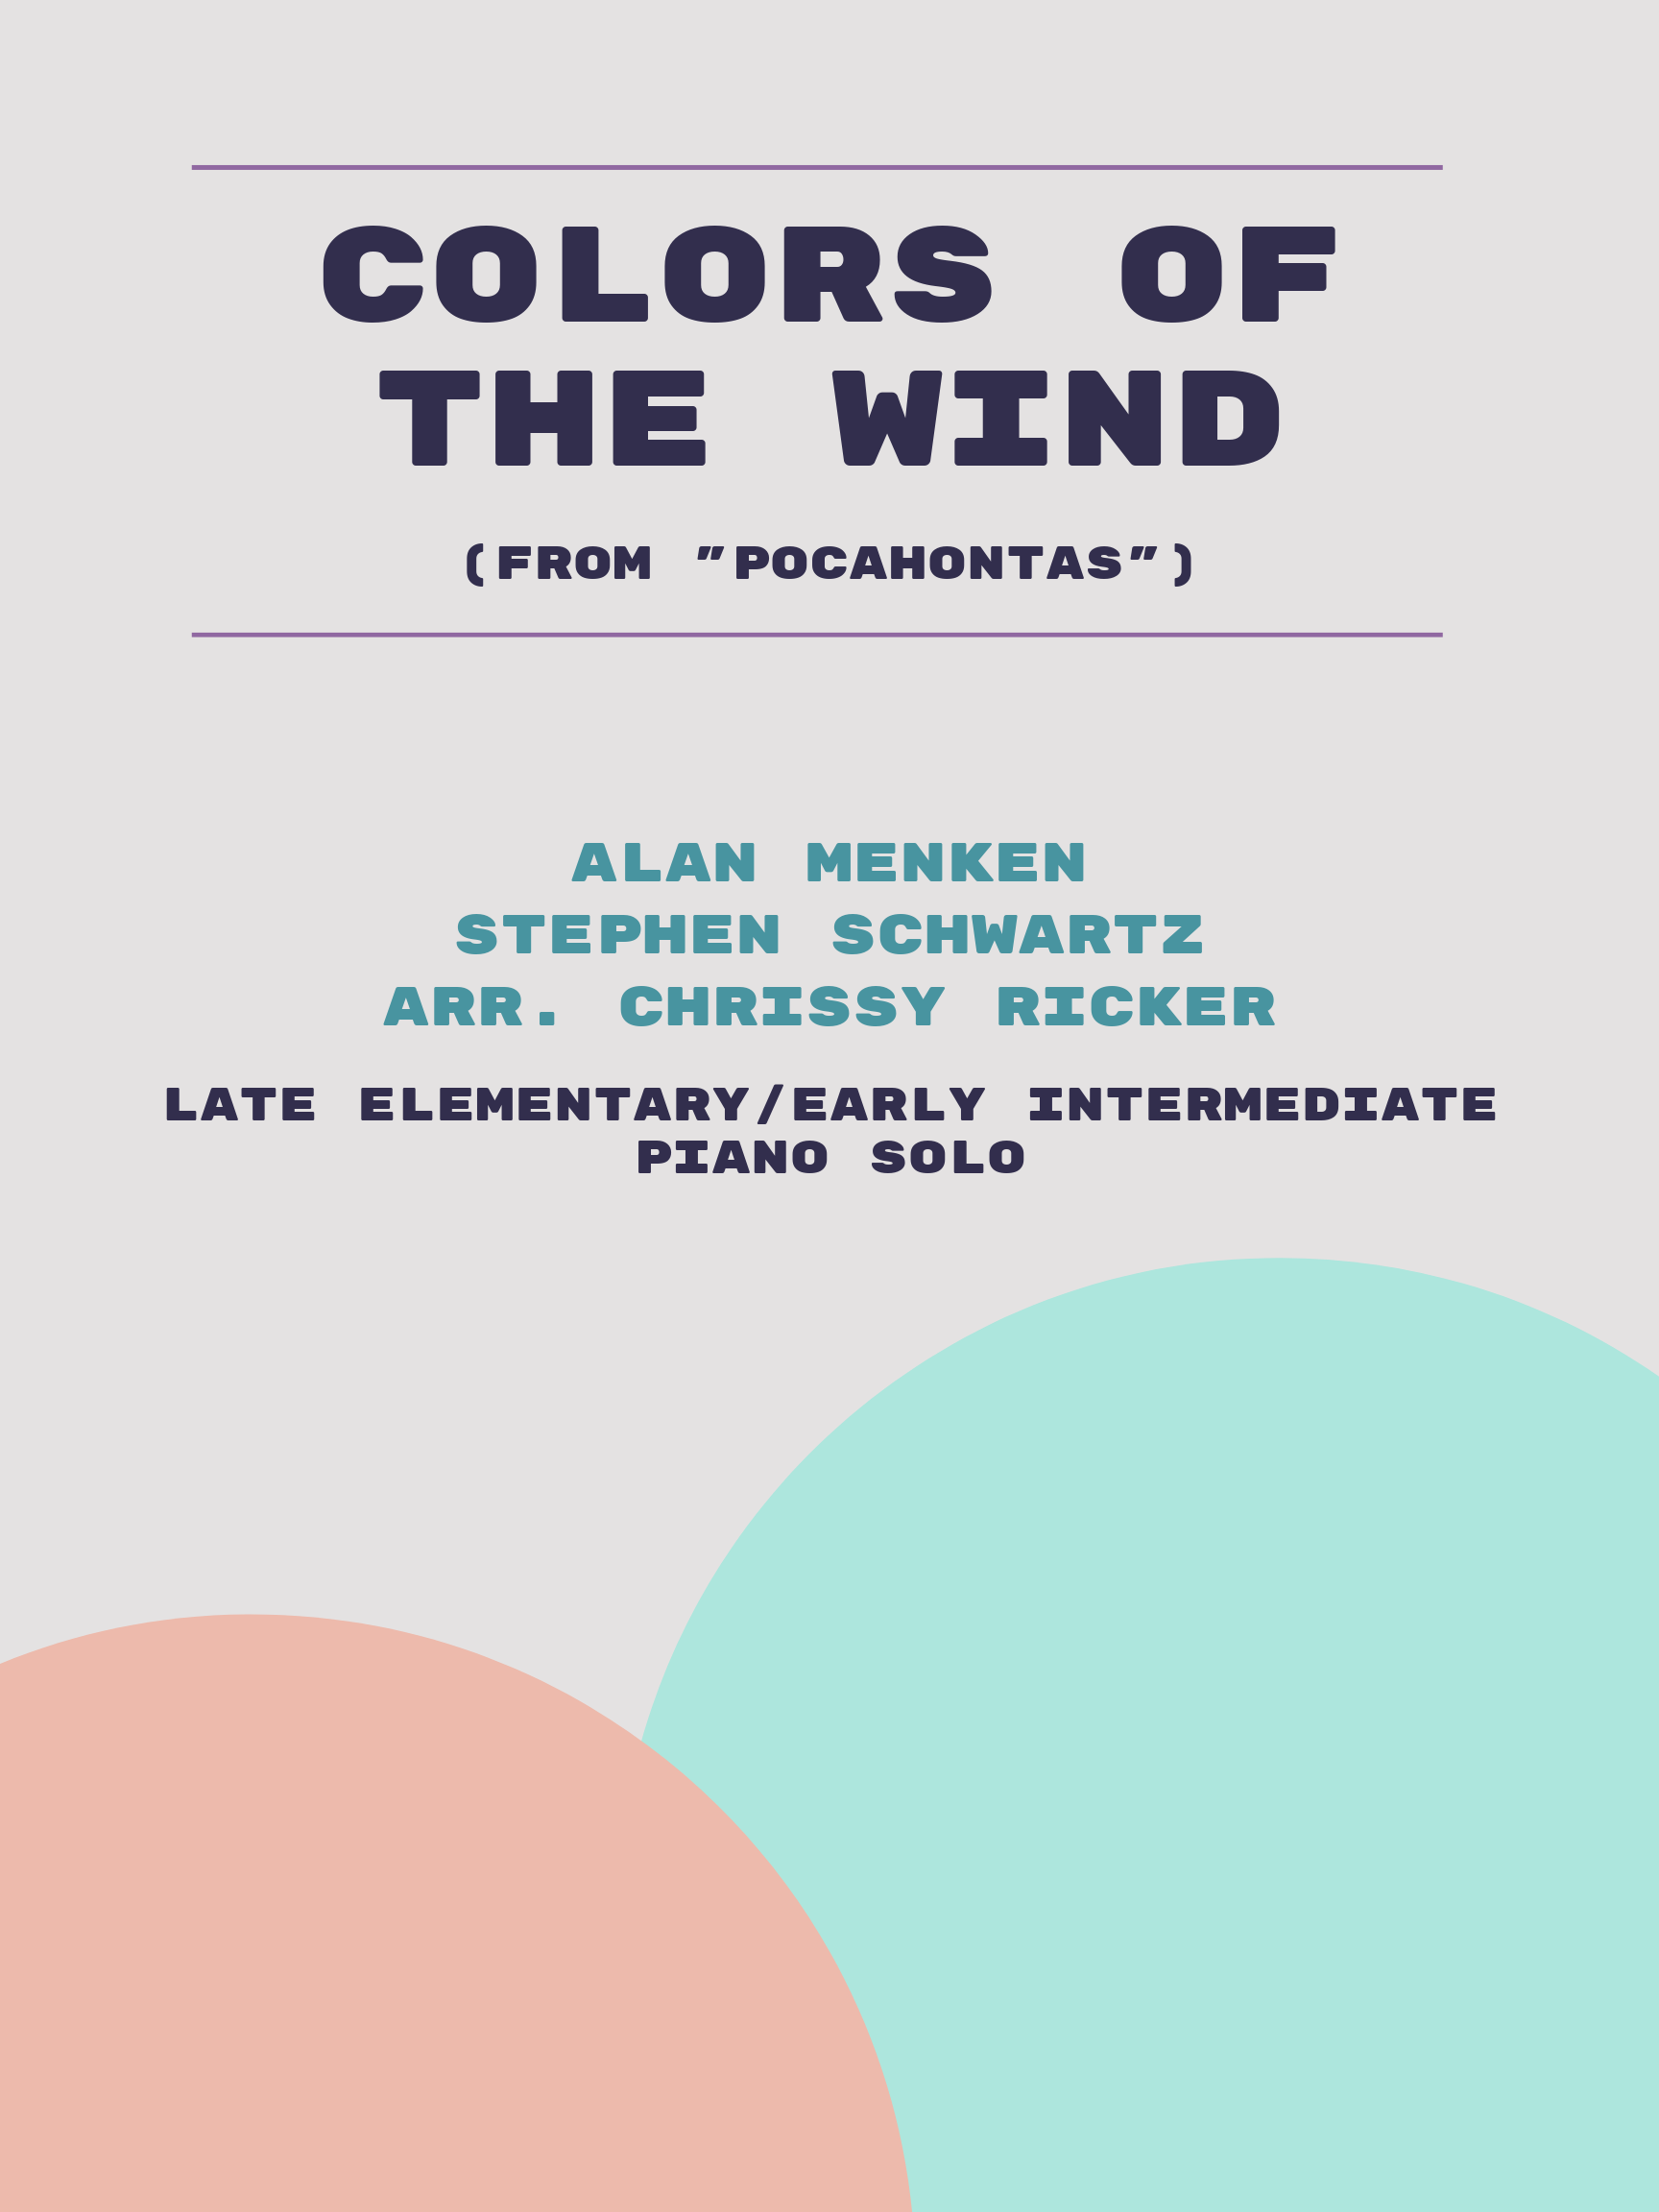 Colors of the Wind by Alan Menken, Stephen Schwartz